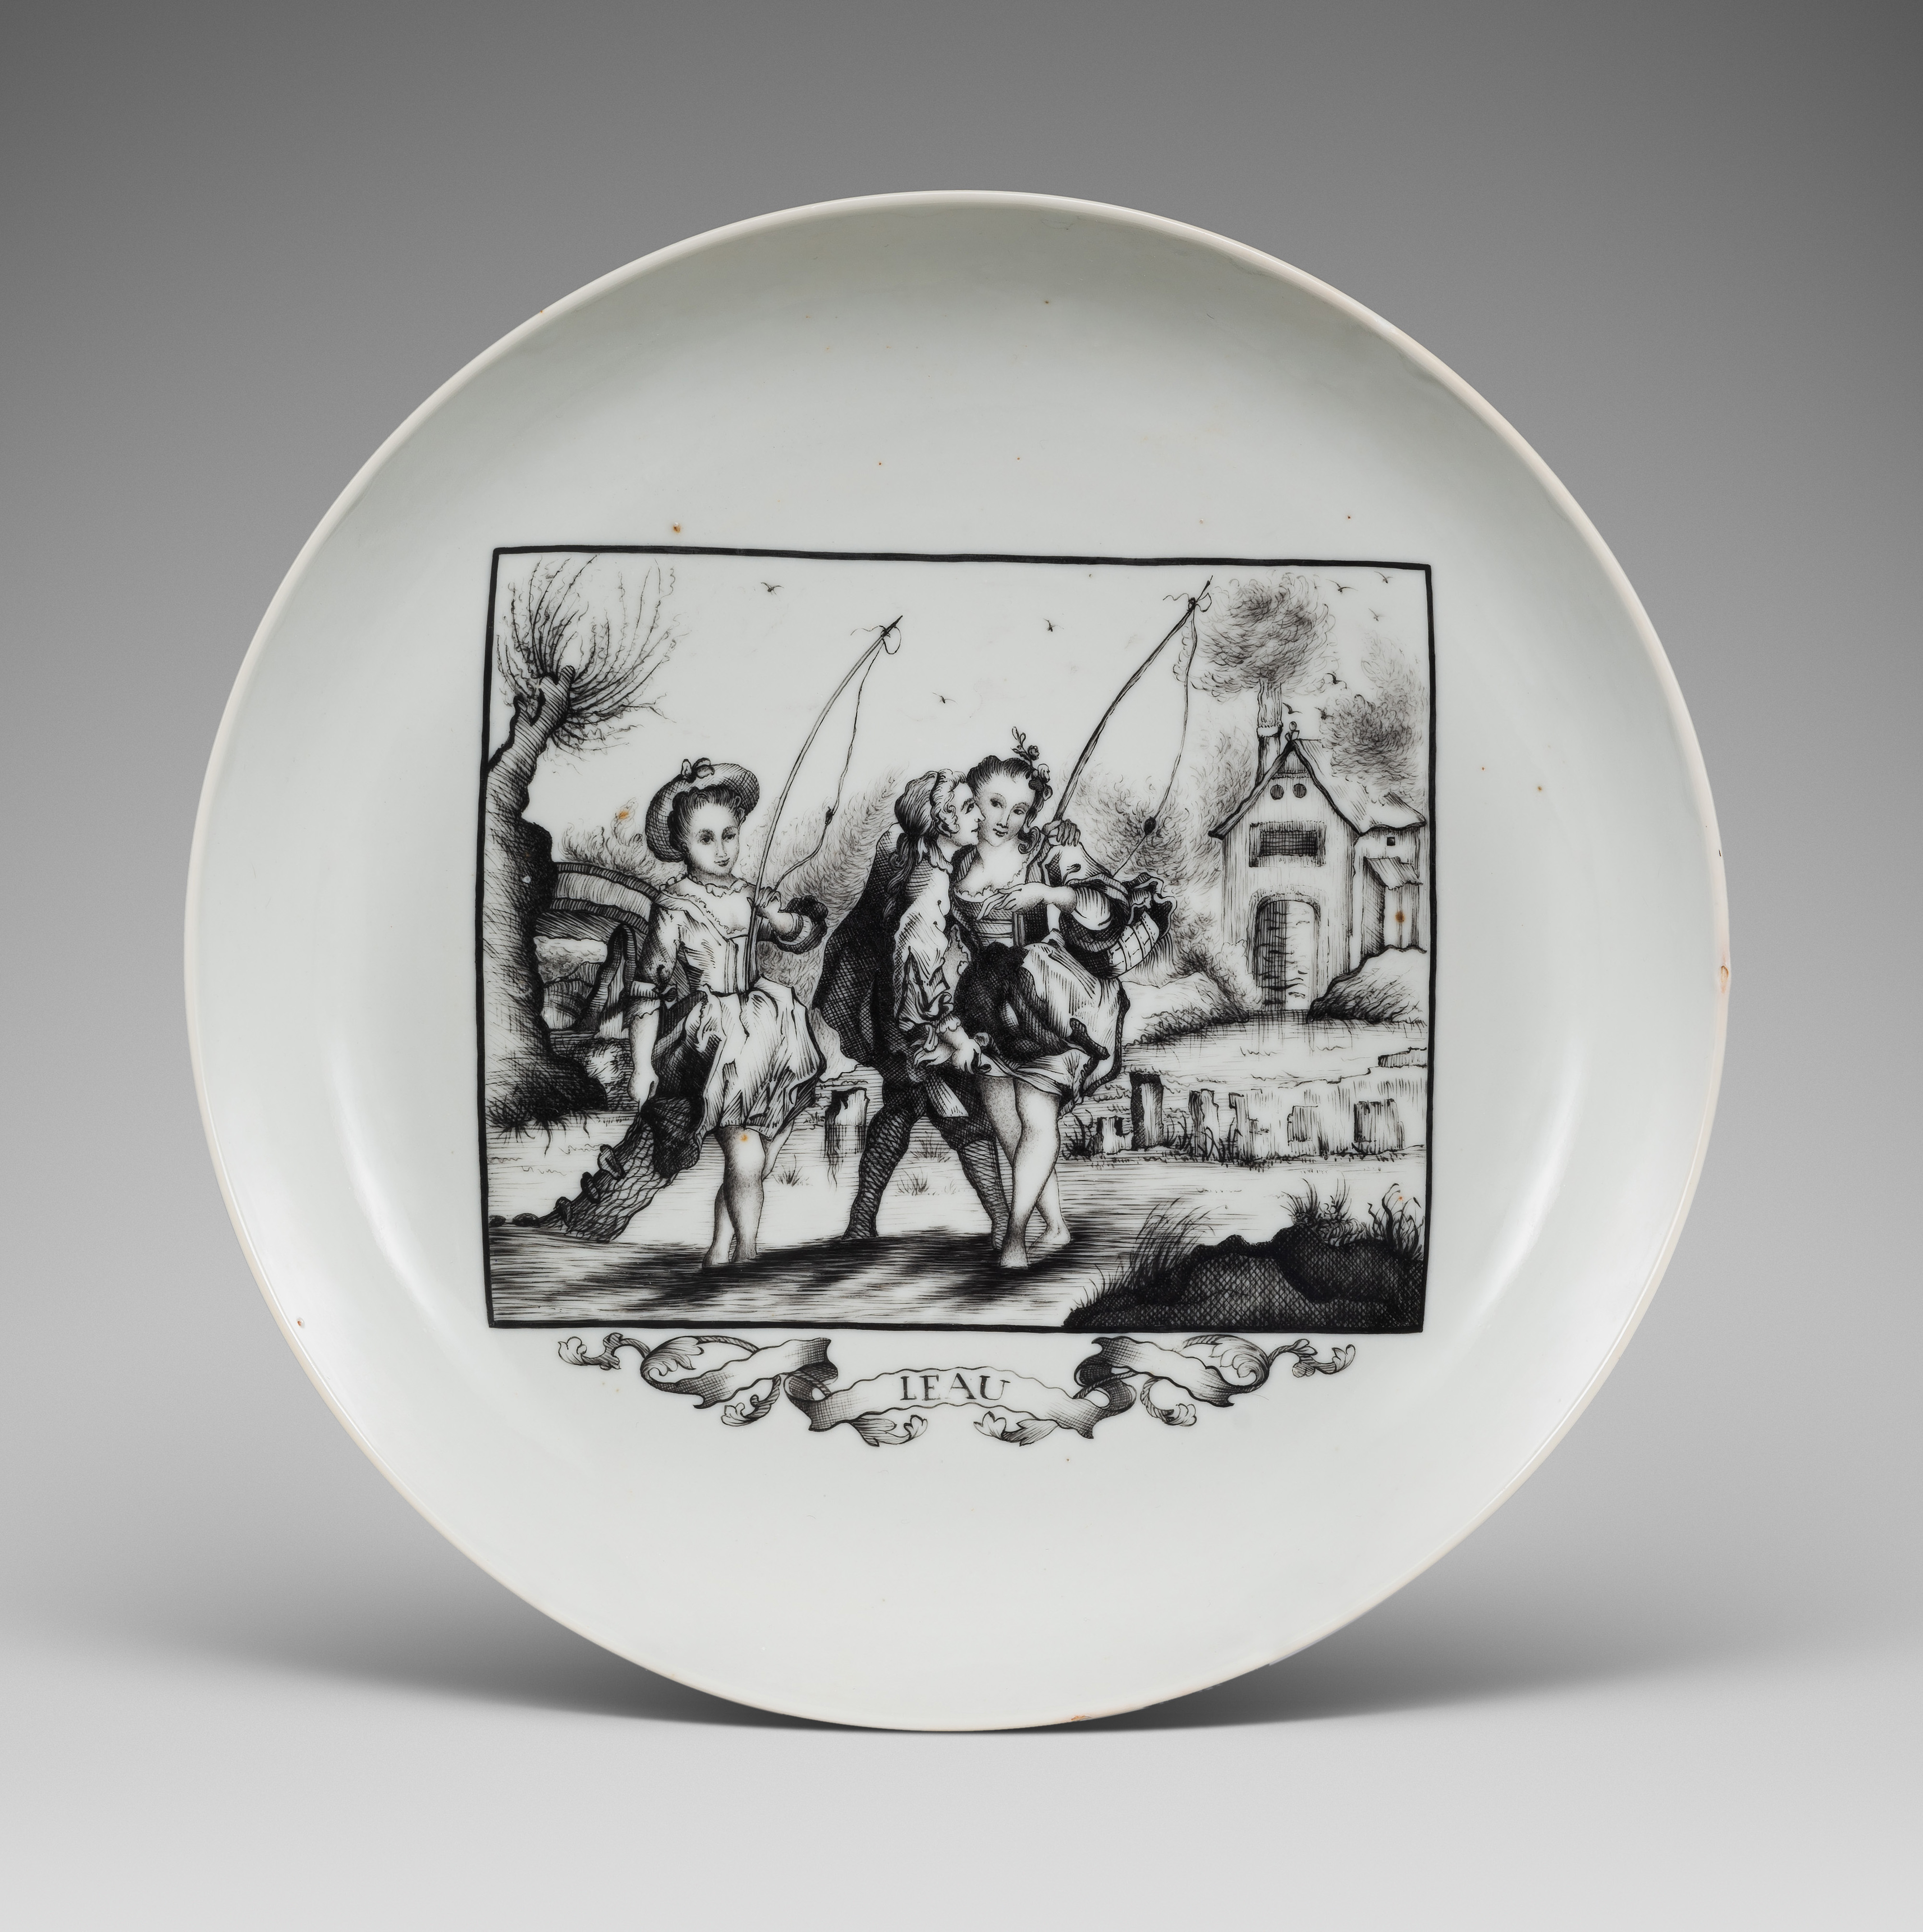 Porcelain Qianlong period (1736-1795), ca. 1770, China